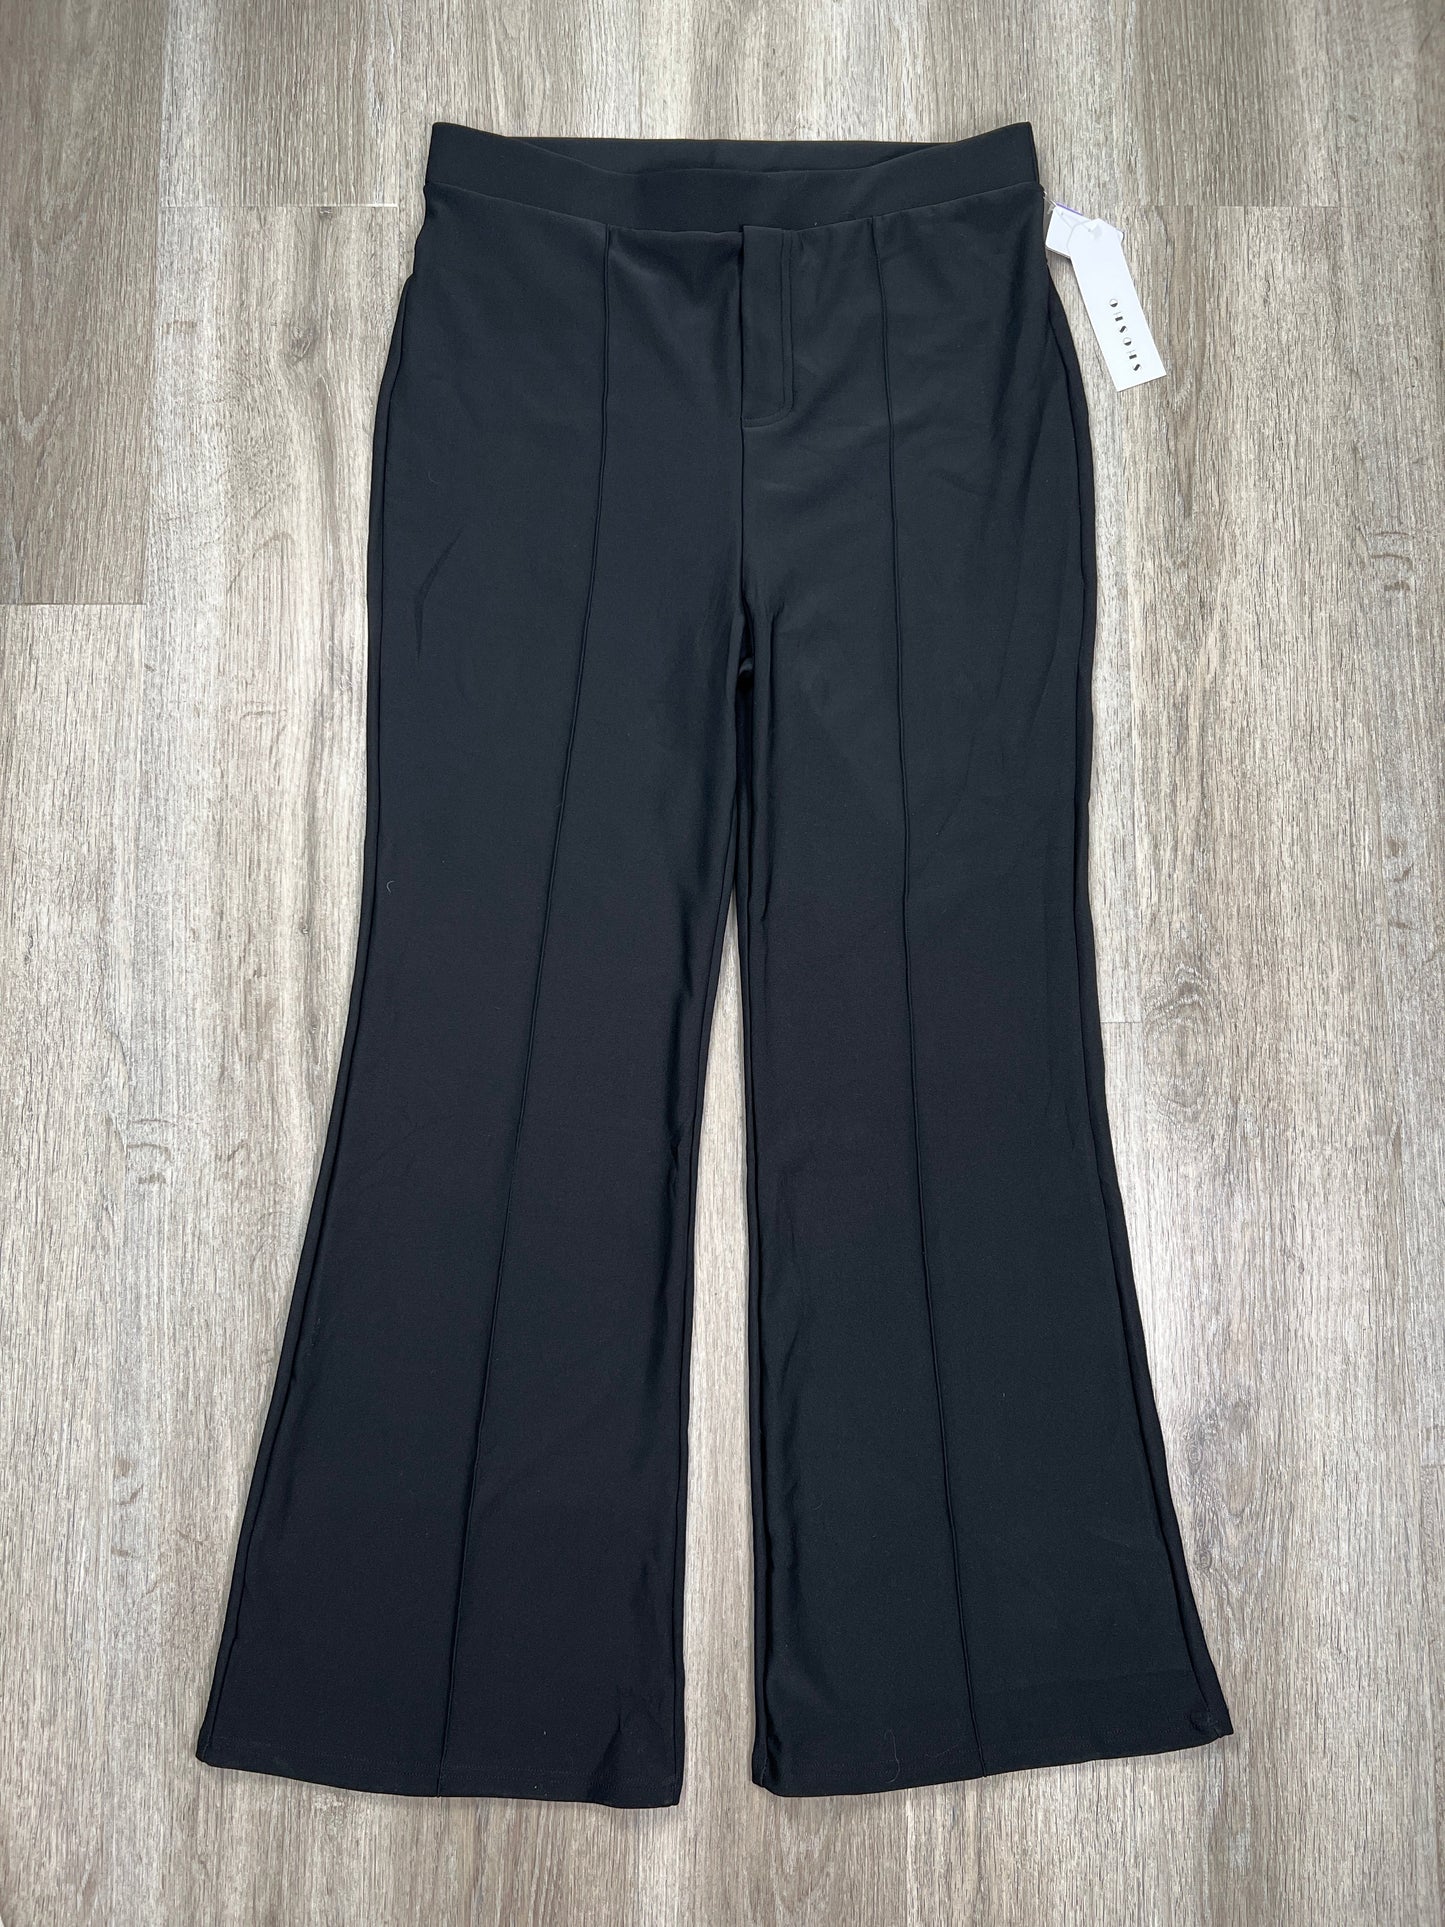 Black Pants Dress SHOSHO, Size 3x